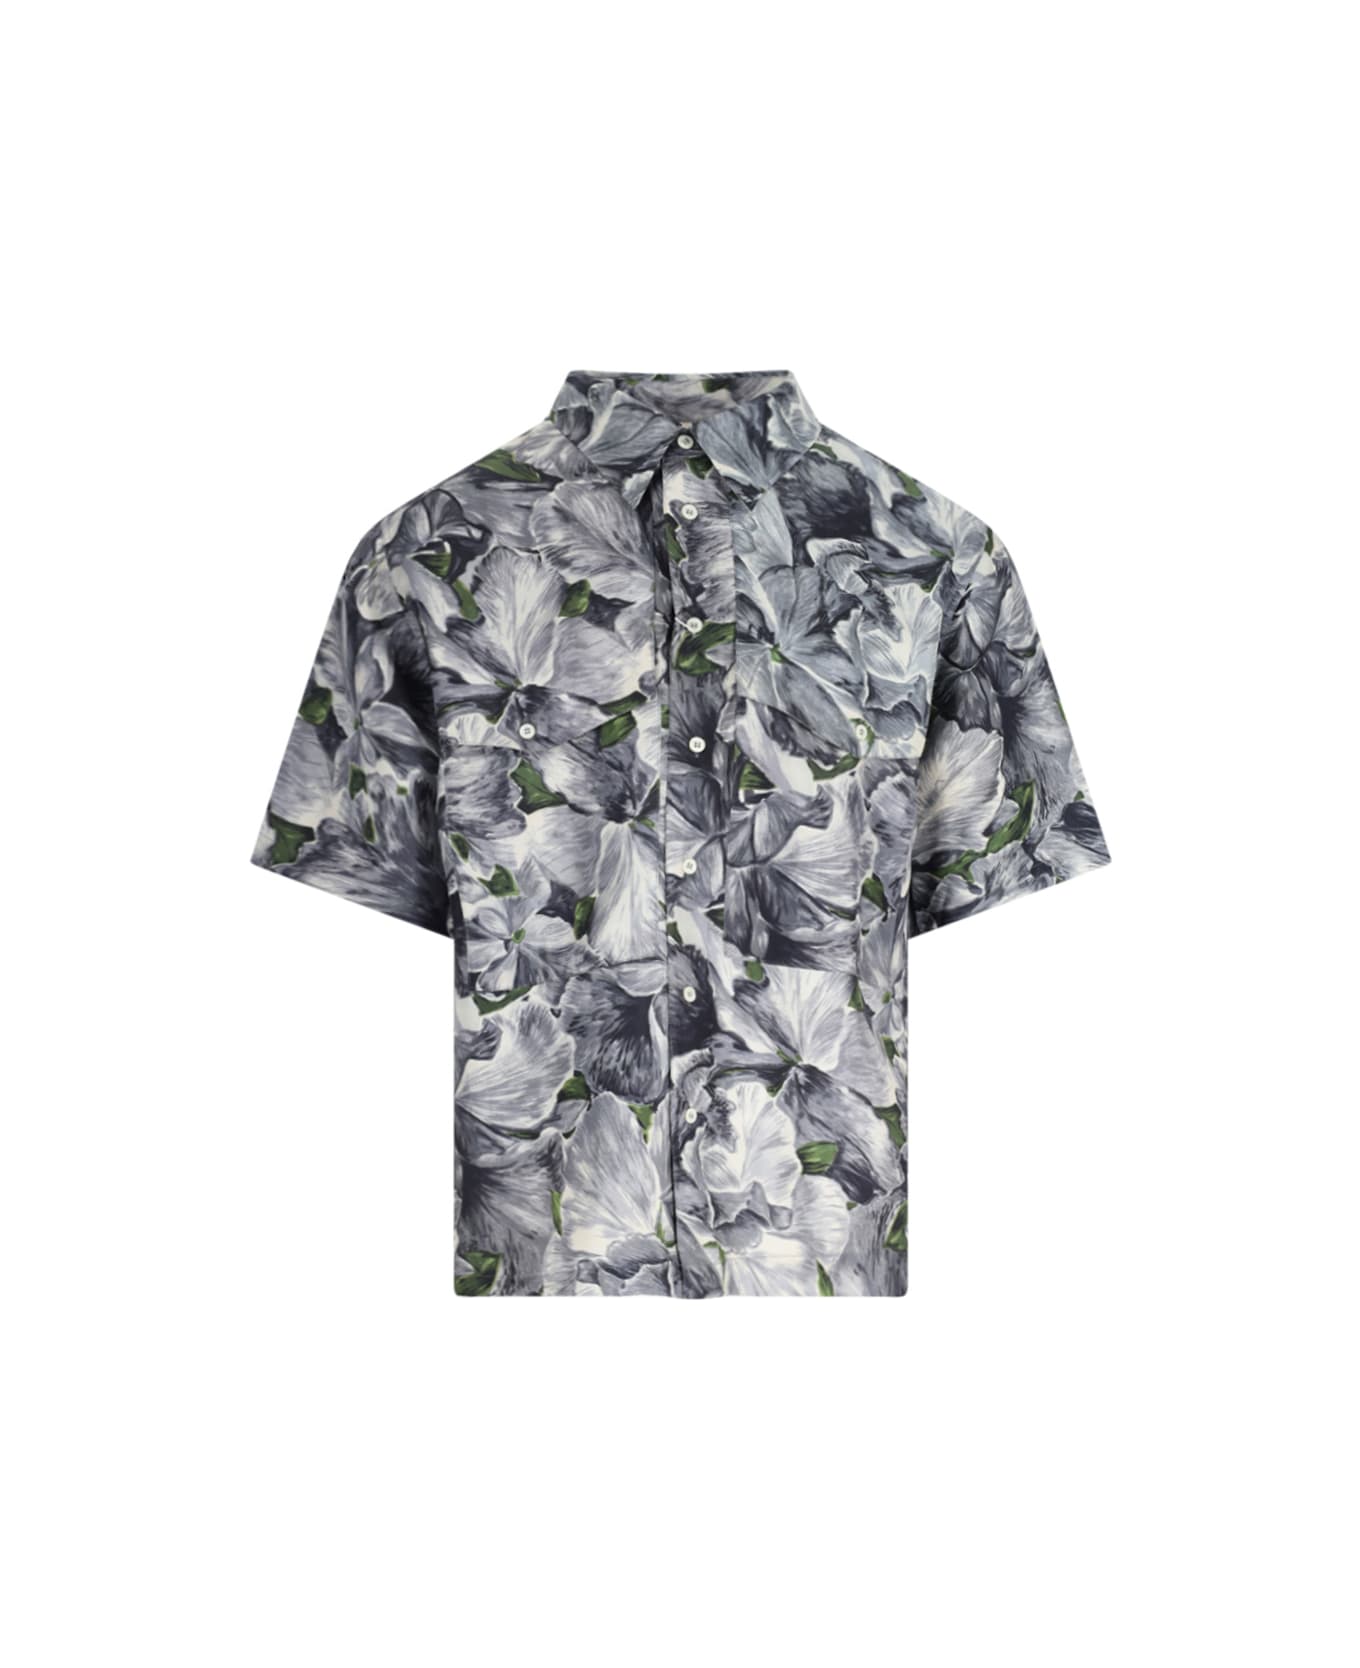 Sunflower Short-sleeved Shirt - Gray